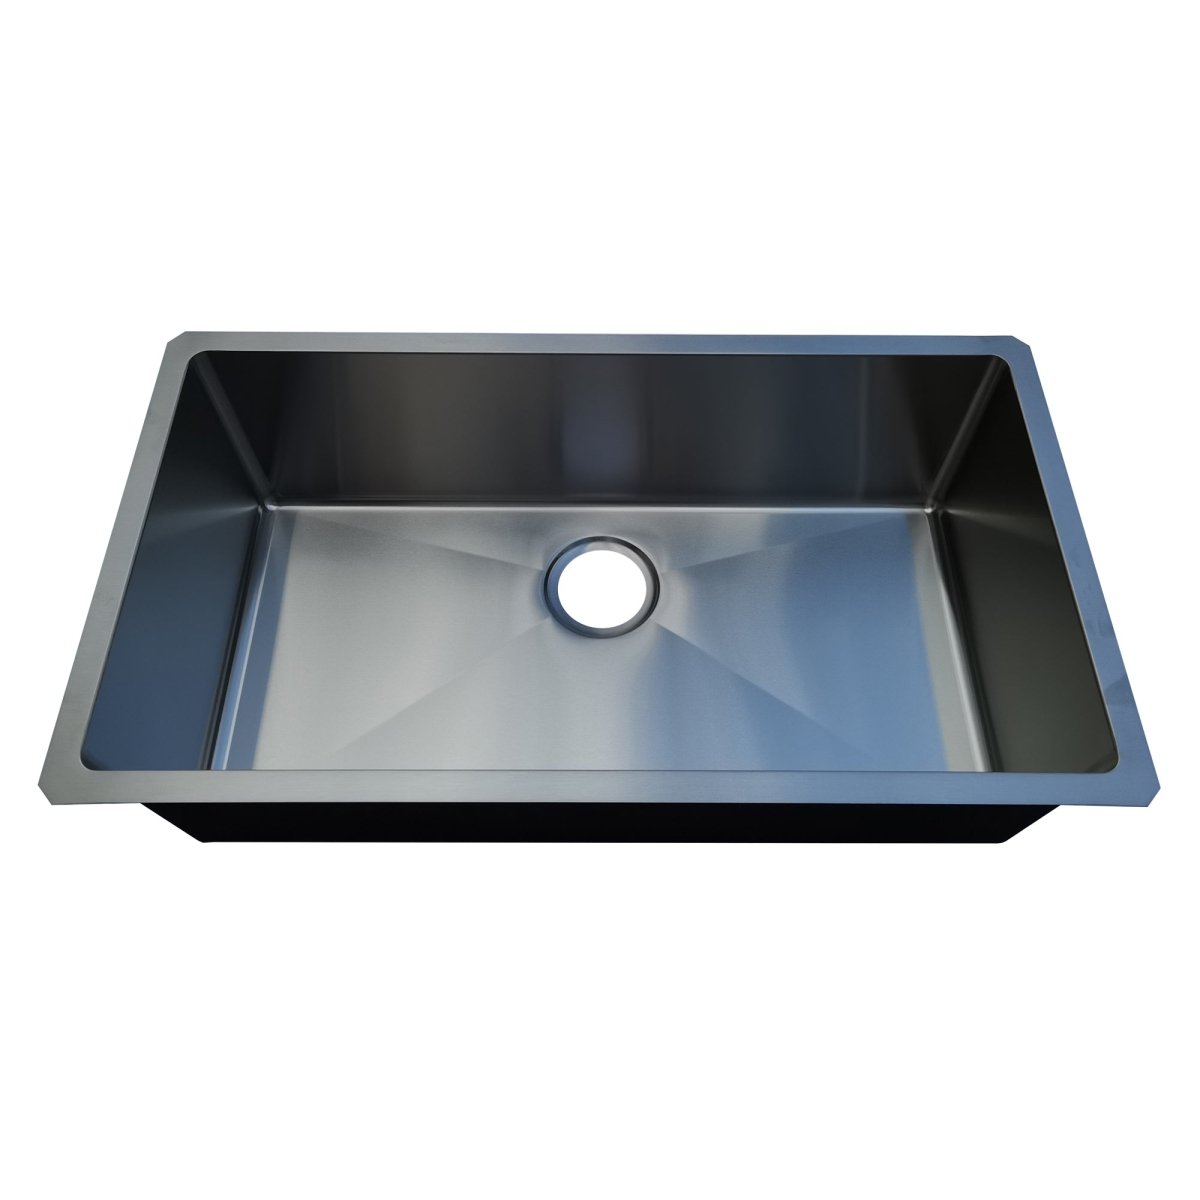 18g Micro Radius 32×18 Single Bowl Undermount Stainless Steel Kitchen Sink - Dakota Sinks